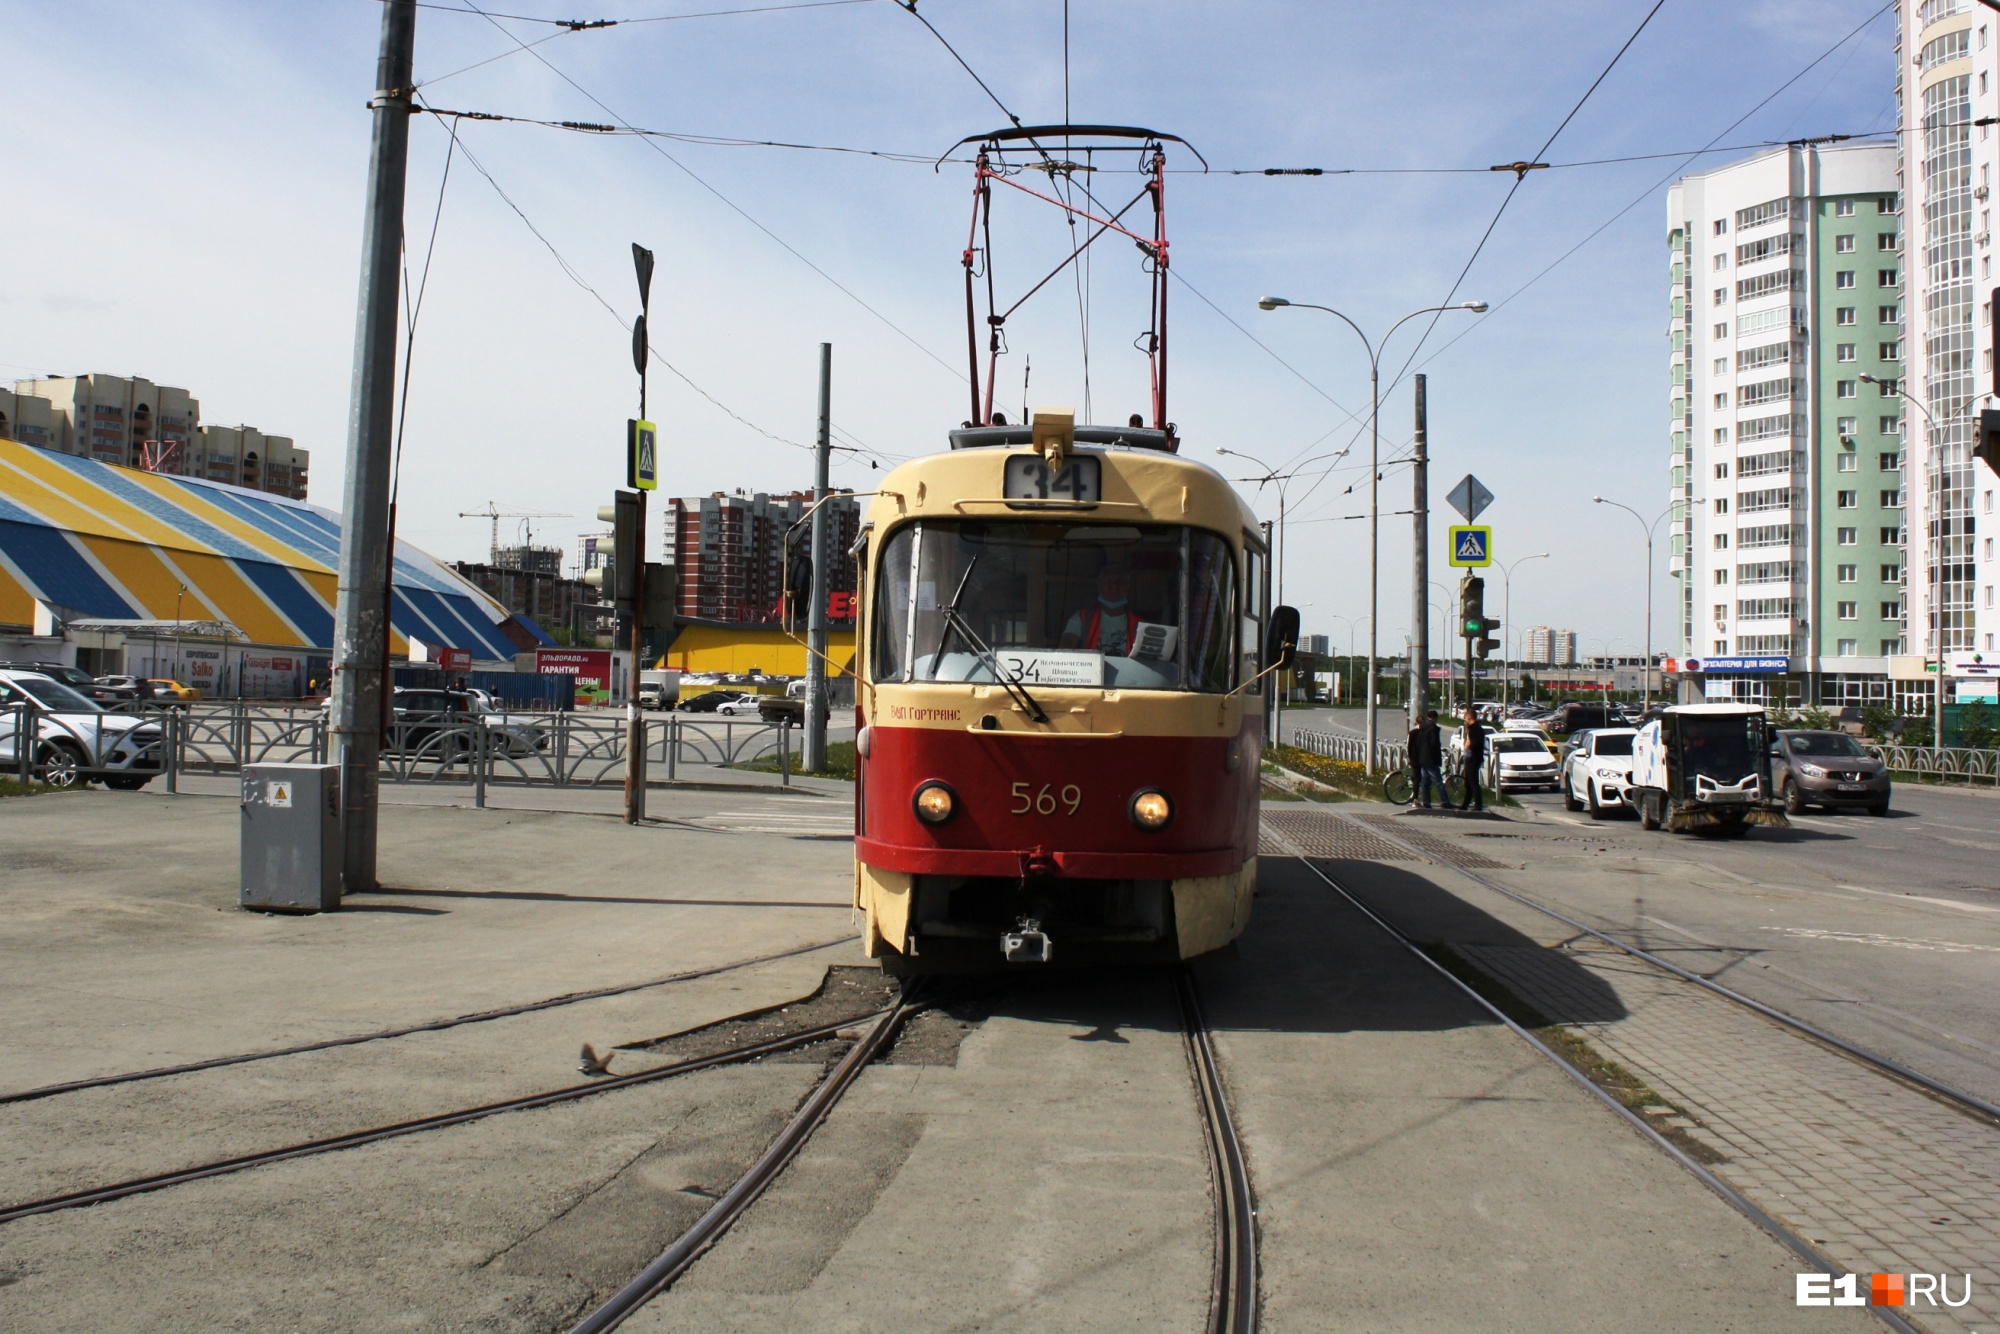 Трамваи и троллейбусы в Екатеринбурге пригрозили обесточить за долги. Как решается проблема?